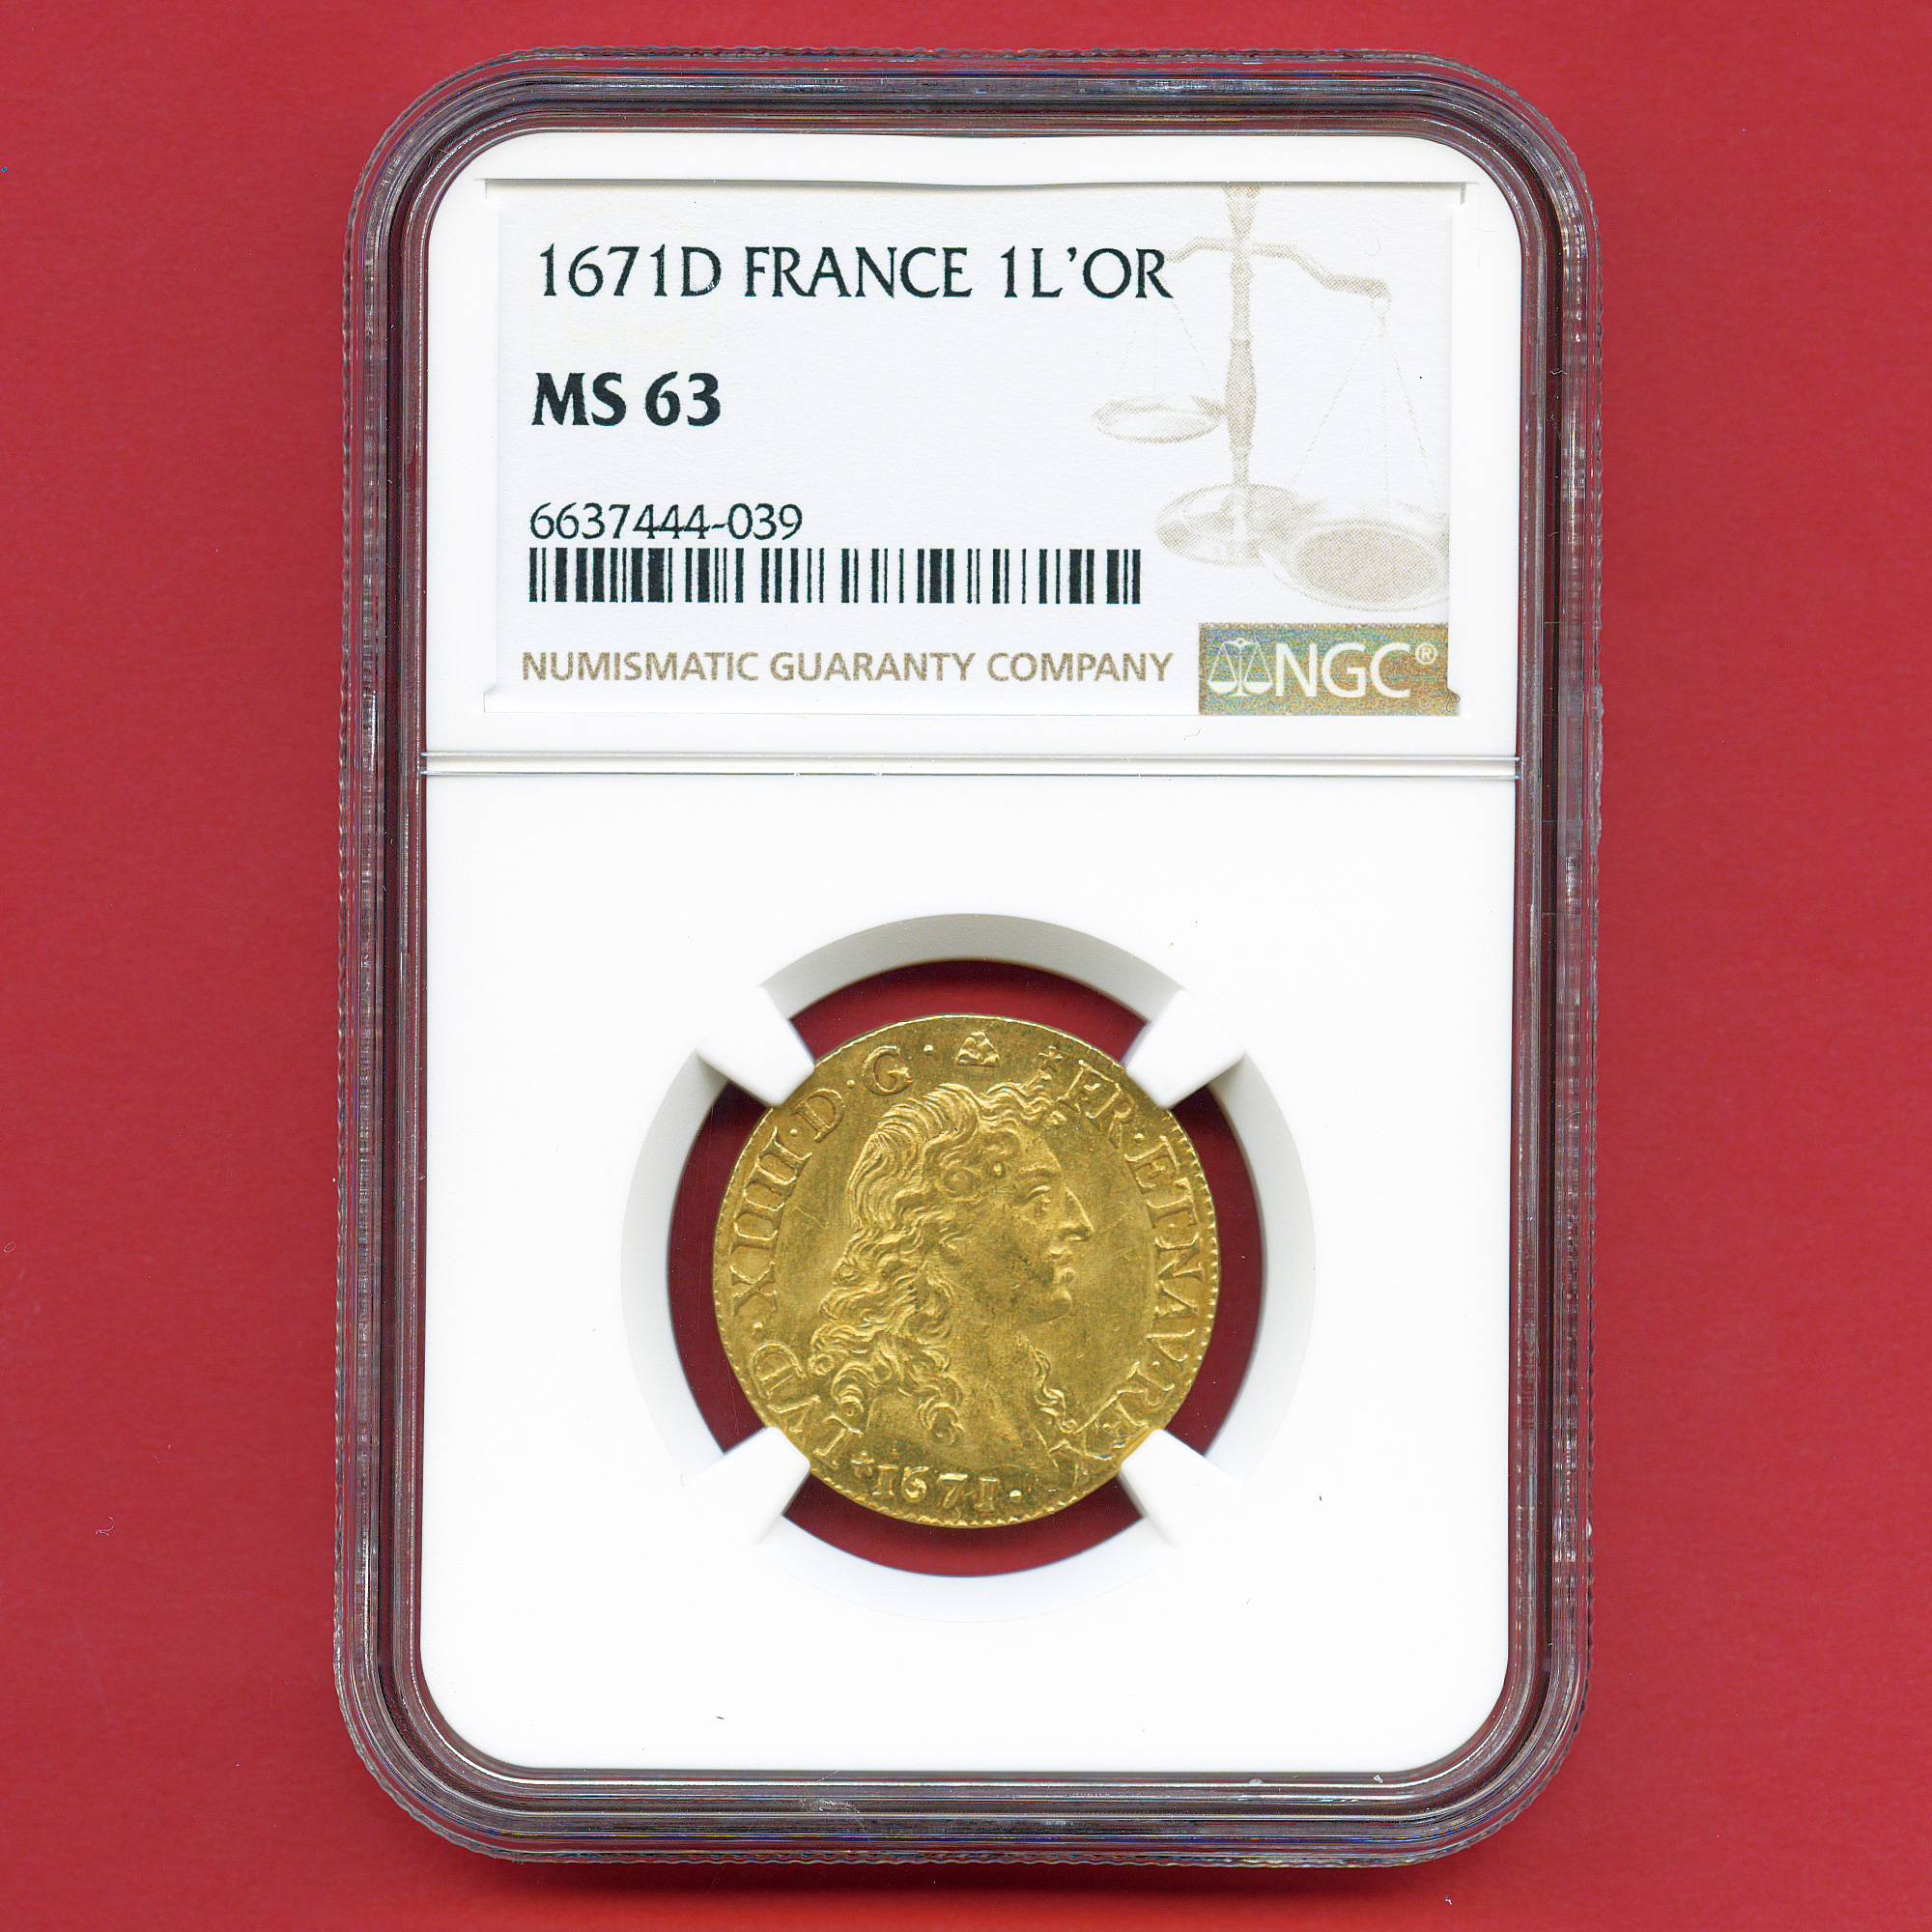 フランス ルイドール金貨 ルイ14世 王室の紋章と王冠 1671D 最高鑑定 MS63 総鑑定枚数2枚